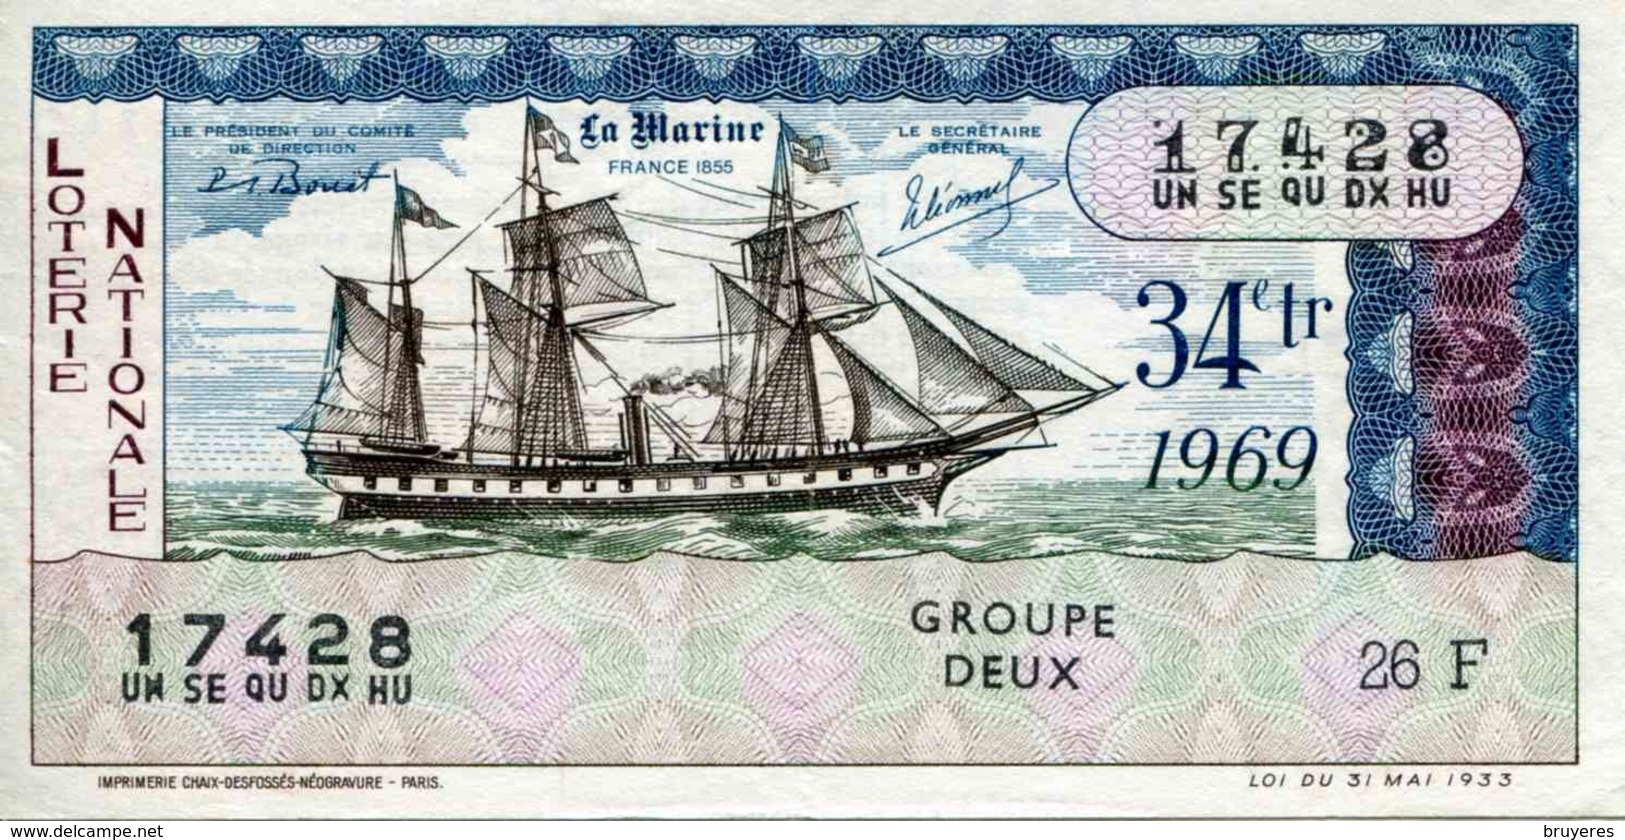 BILLET DE LOTERIE De 1969 Sur Le Thème "La Marine : FRANCE 1855" - Biglietti Della Lotteria